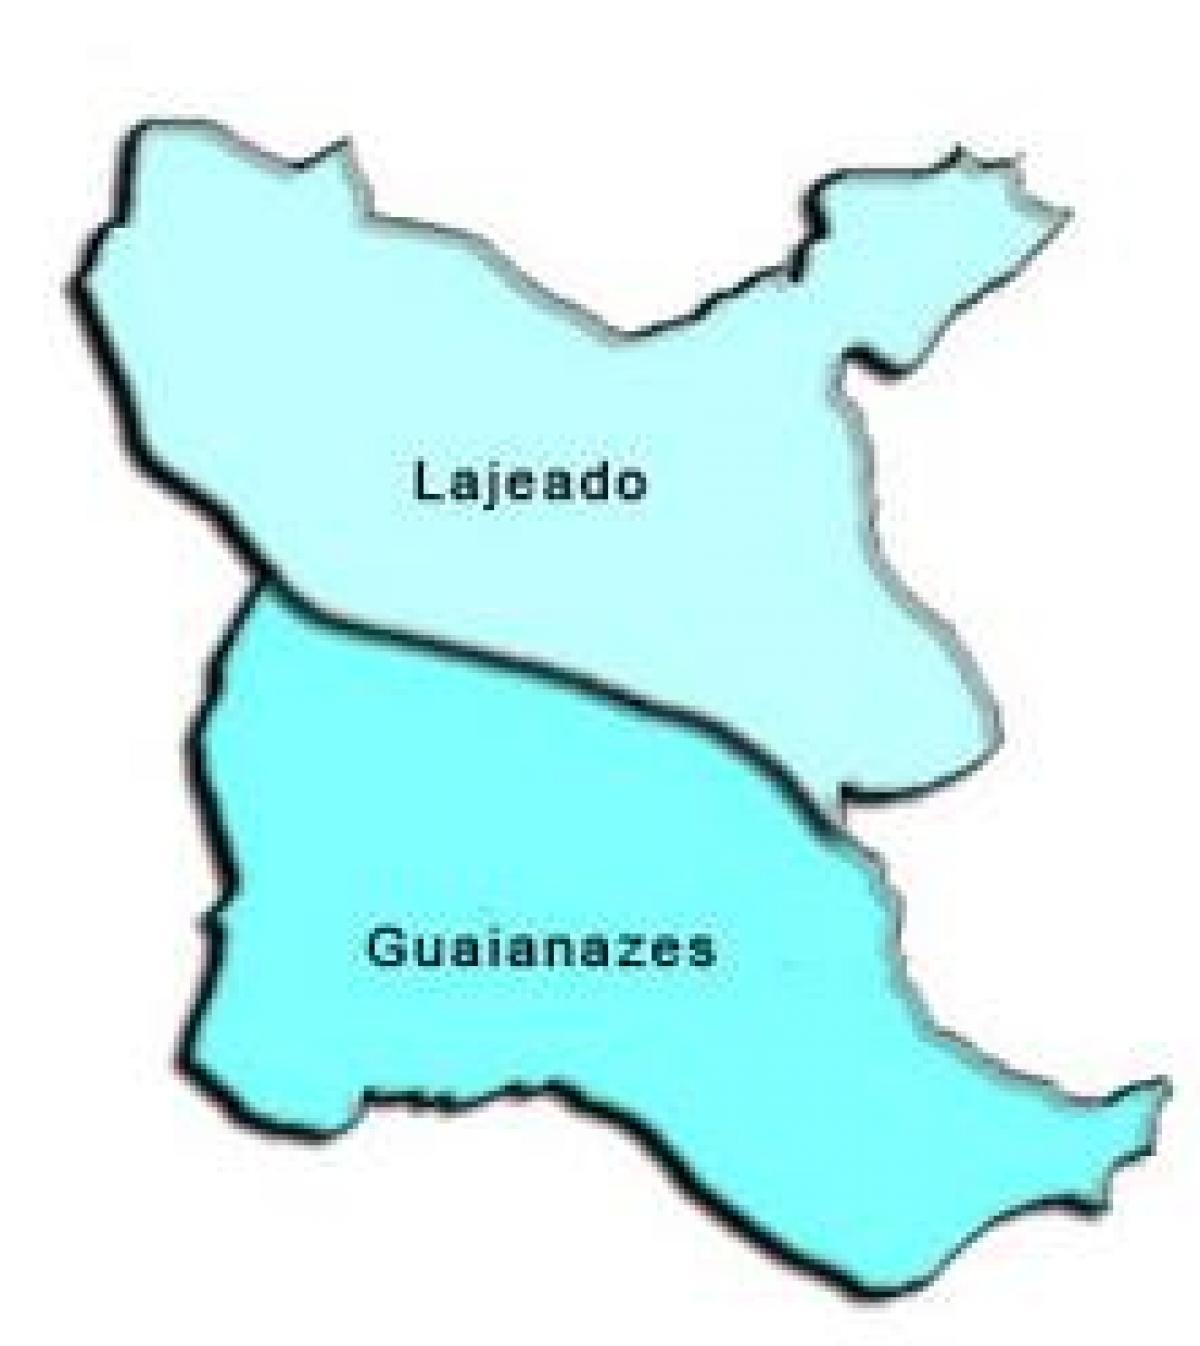 نقشه گواینسس آدور